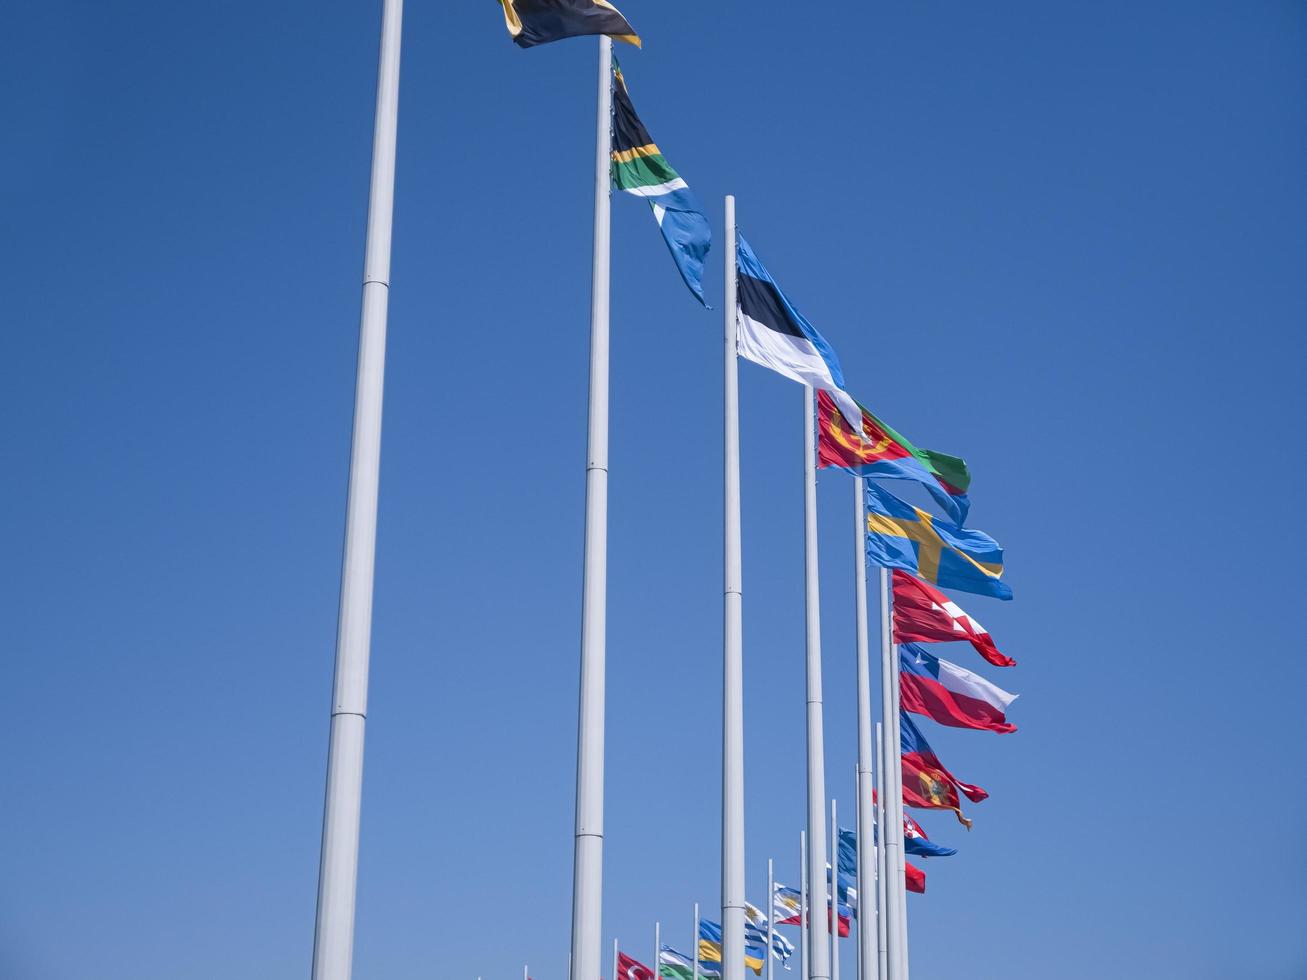 città di adler, russia - agosto 2019, bandiere dei paesi del mondo sui pennoni nel parco olimpico foto